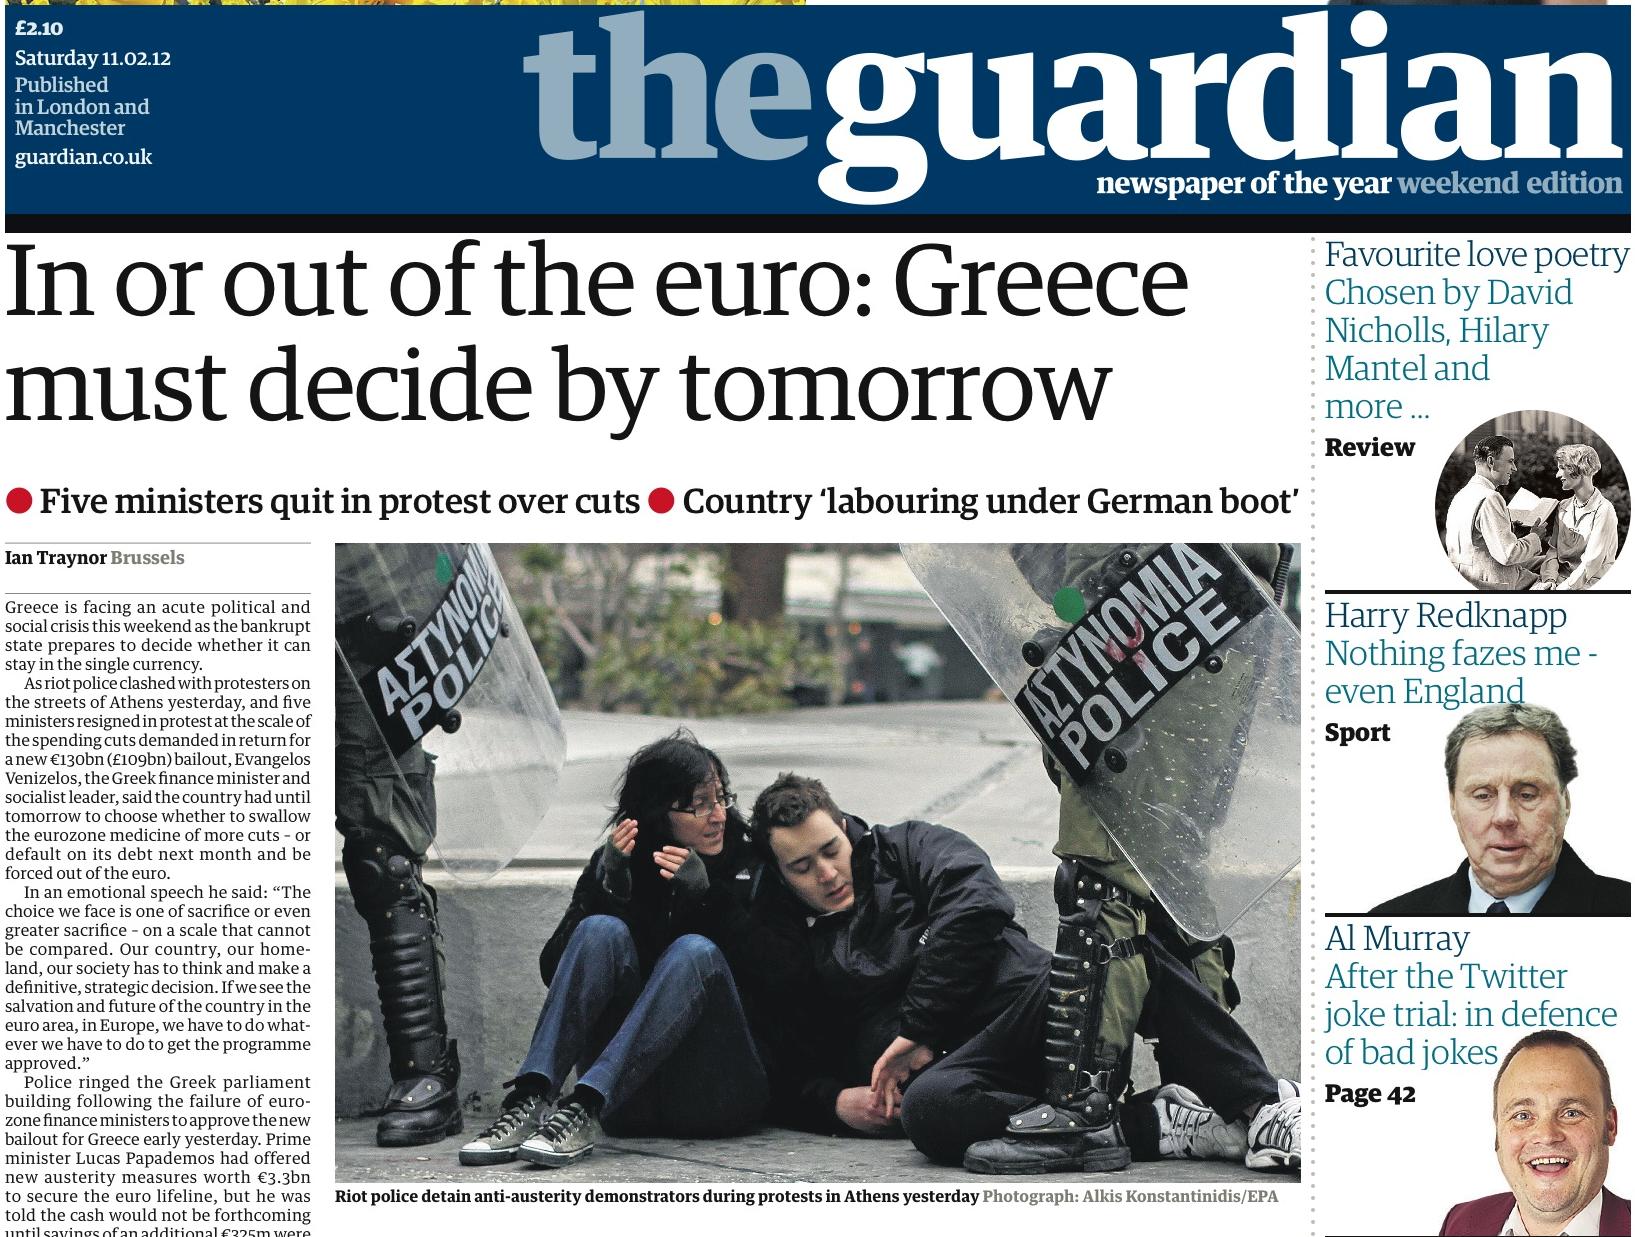 Για απόφαση της Ελλάδας «εντός ή εκτός ευρώ» μιλά ο Guardian